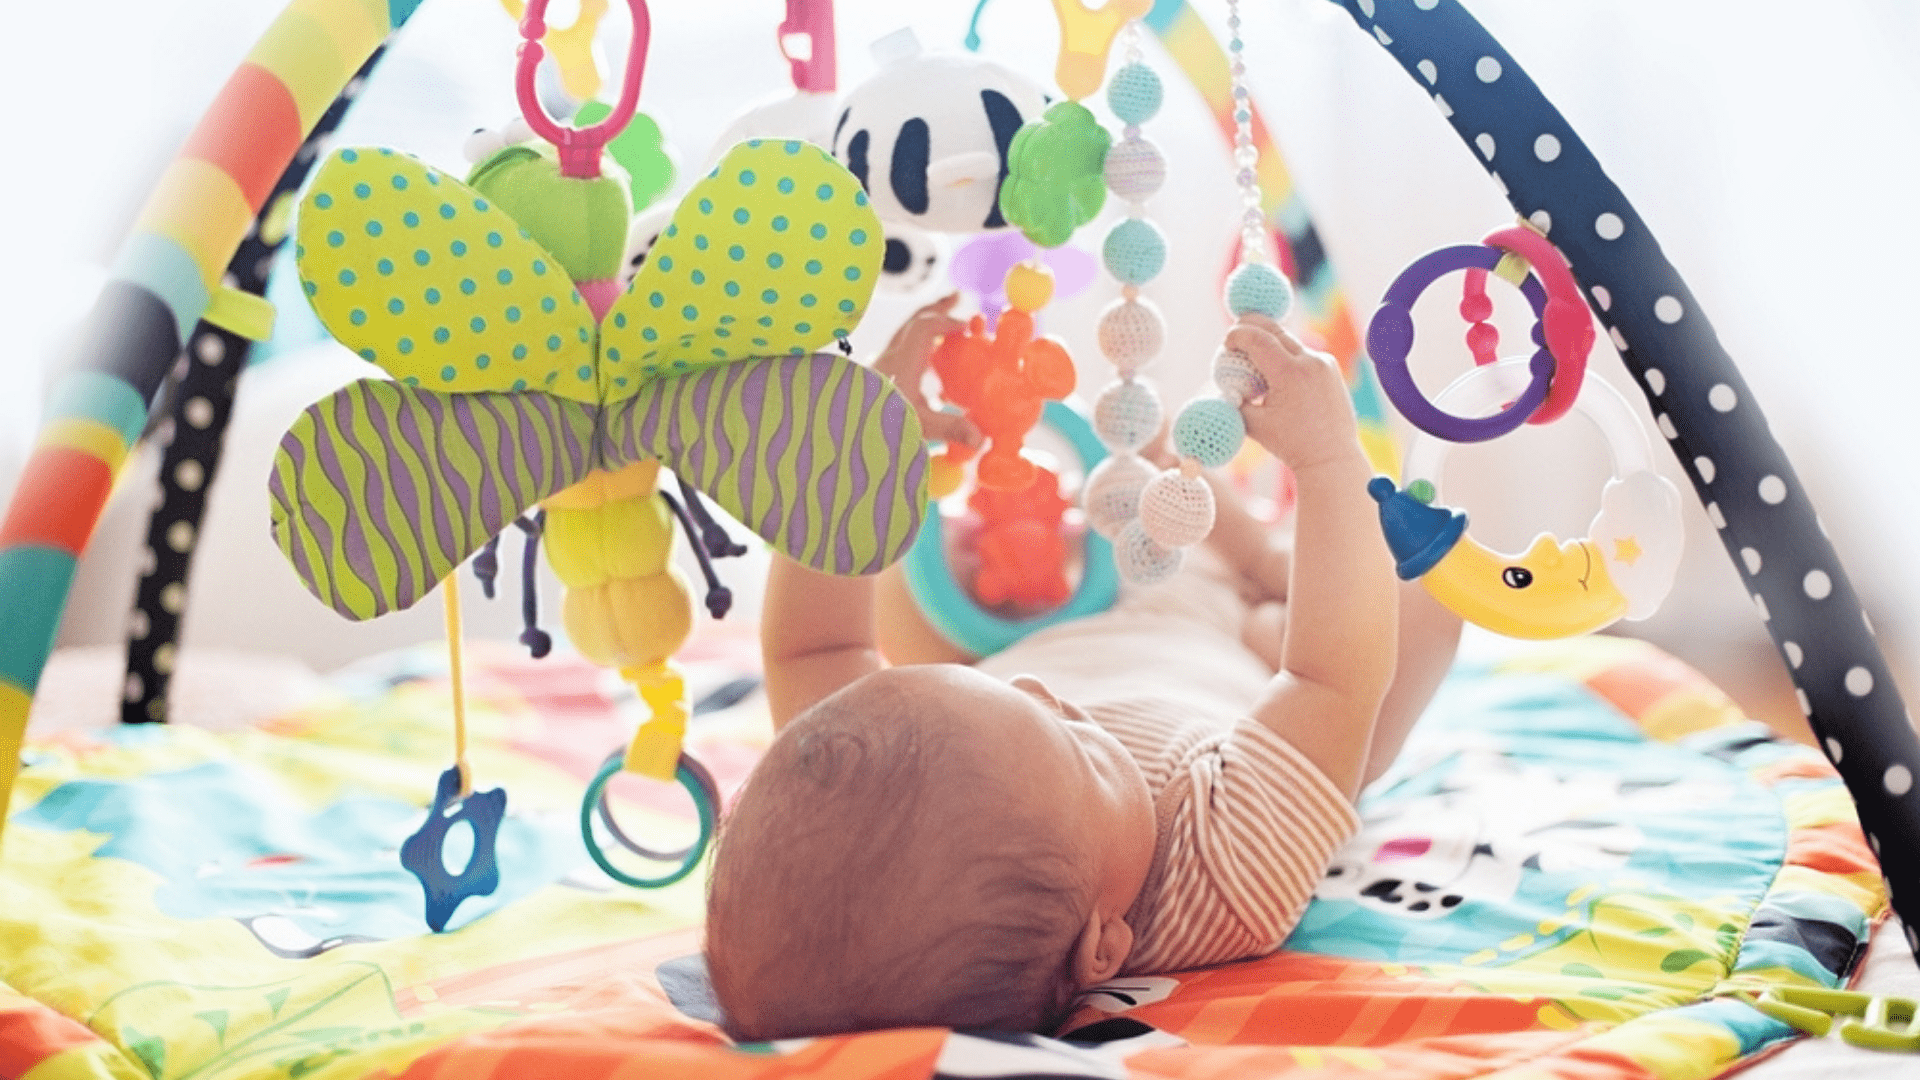 Veja a nossa seleção dos melhores tapetes para bebê de 2020! (Imagem: Reprodução/Shutterstock)